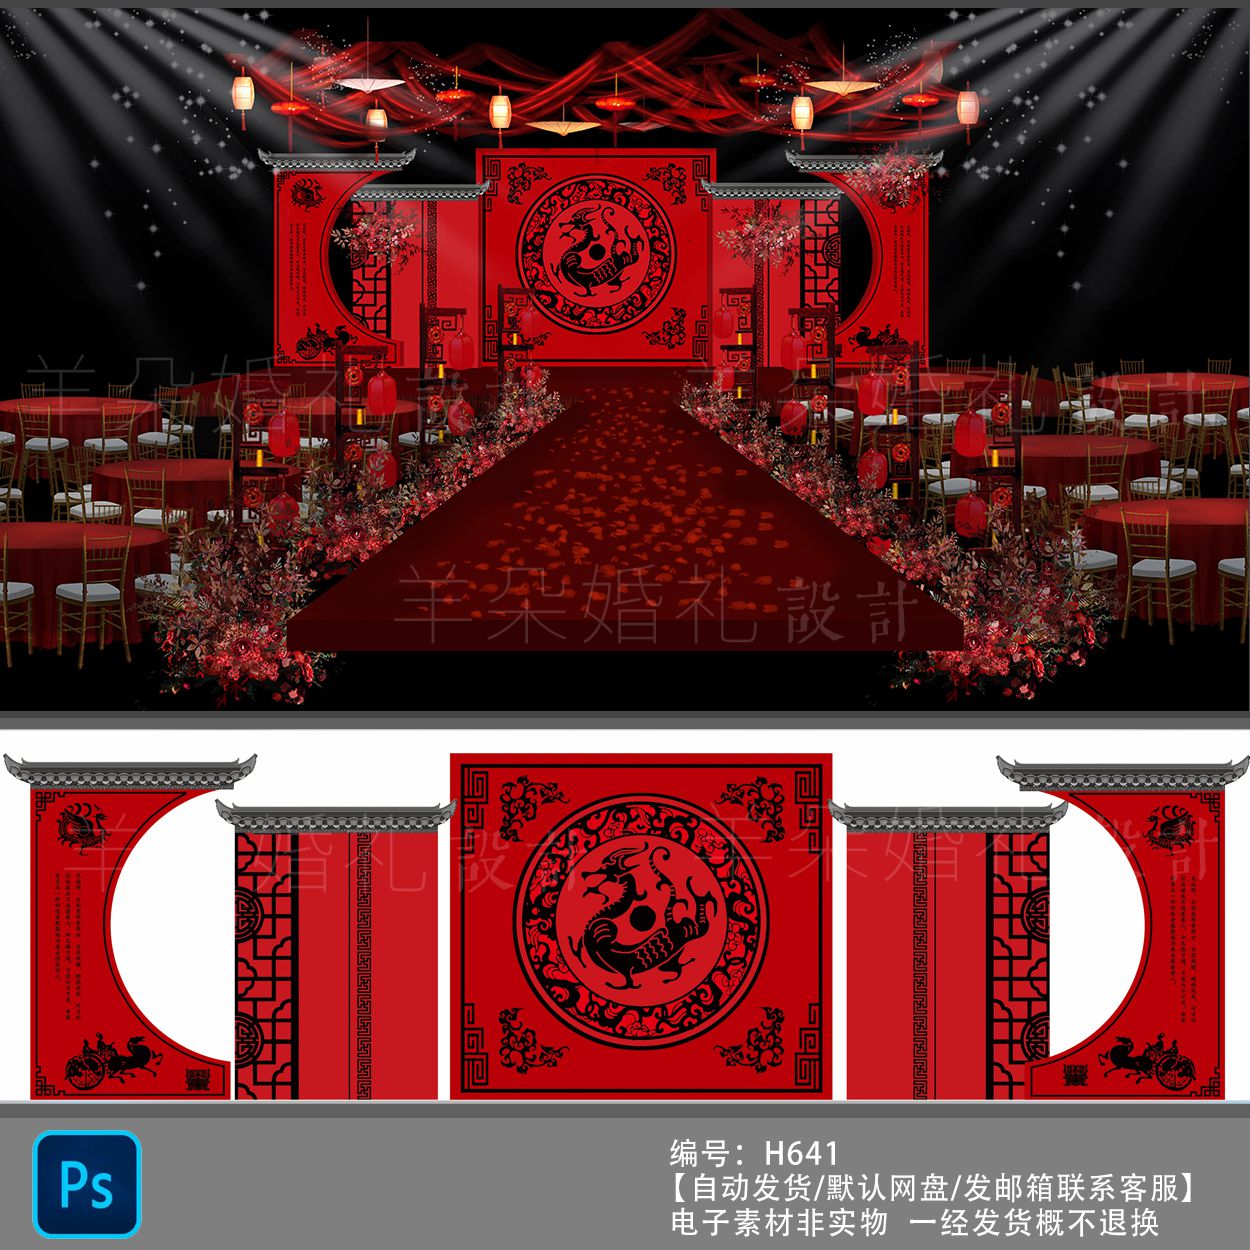 传统红黑色中式汉式 周制婚礼设计稿婚礼背景效果图喷绘psd素材